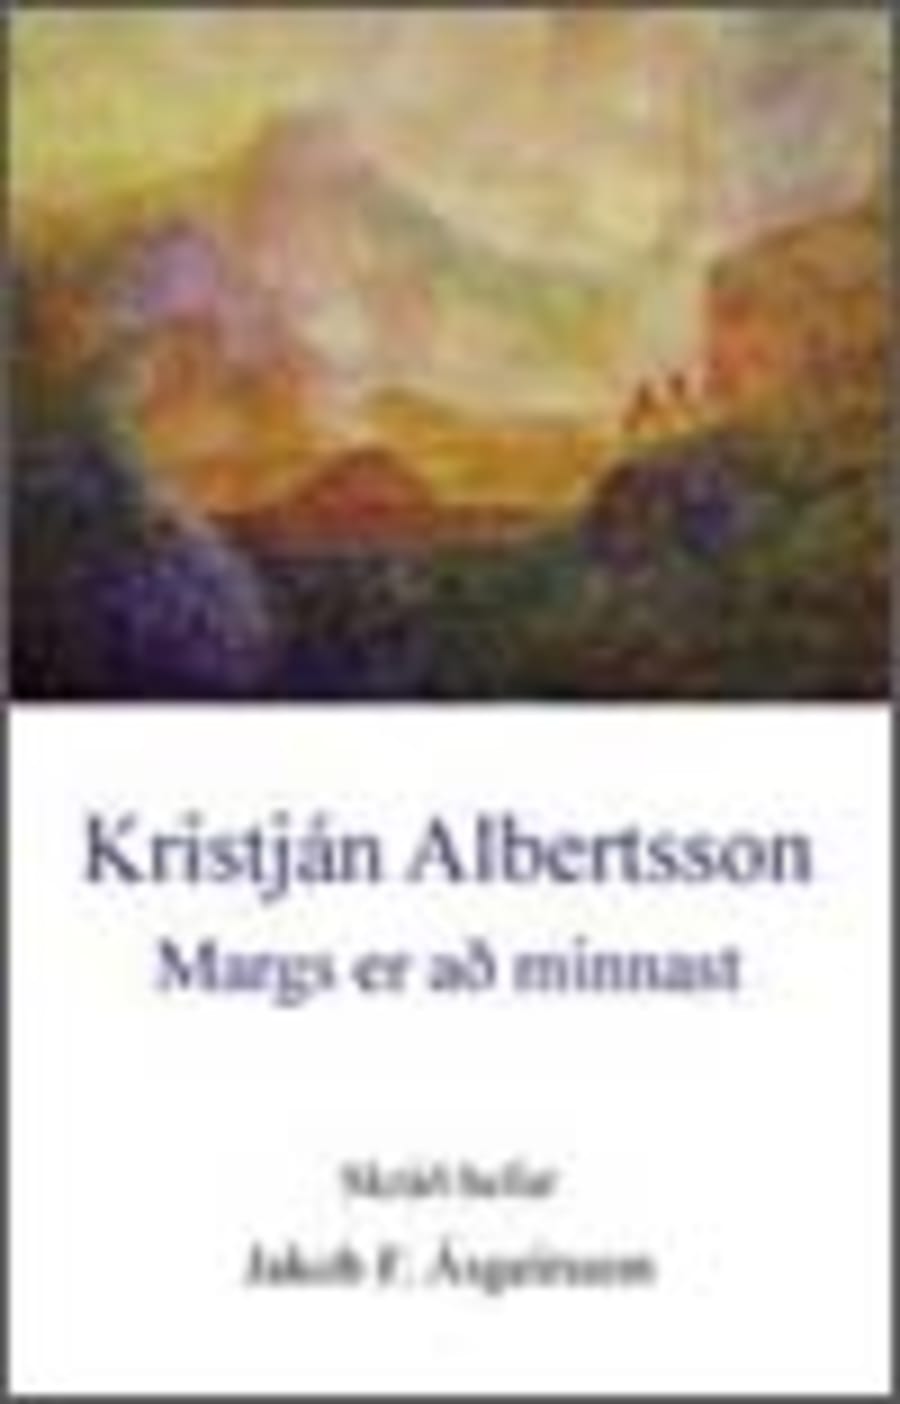 Kristján Albertsson - Margs er að minnast